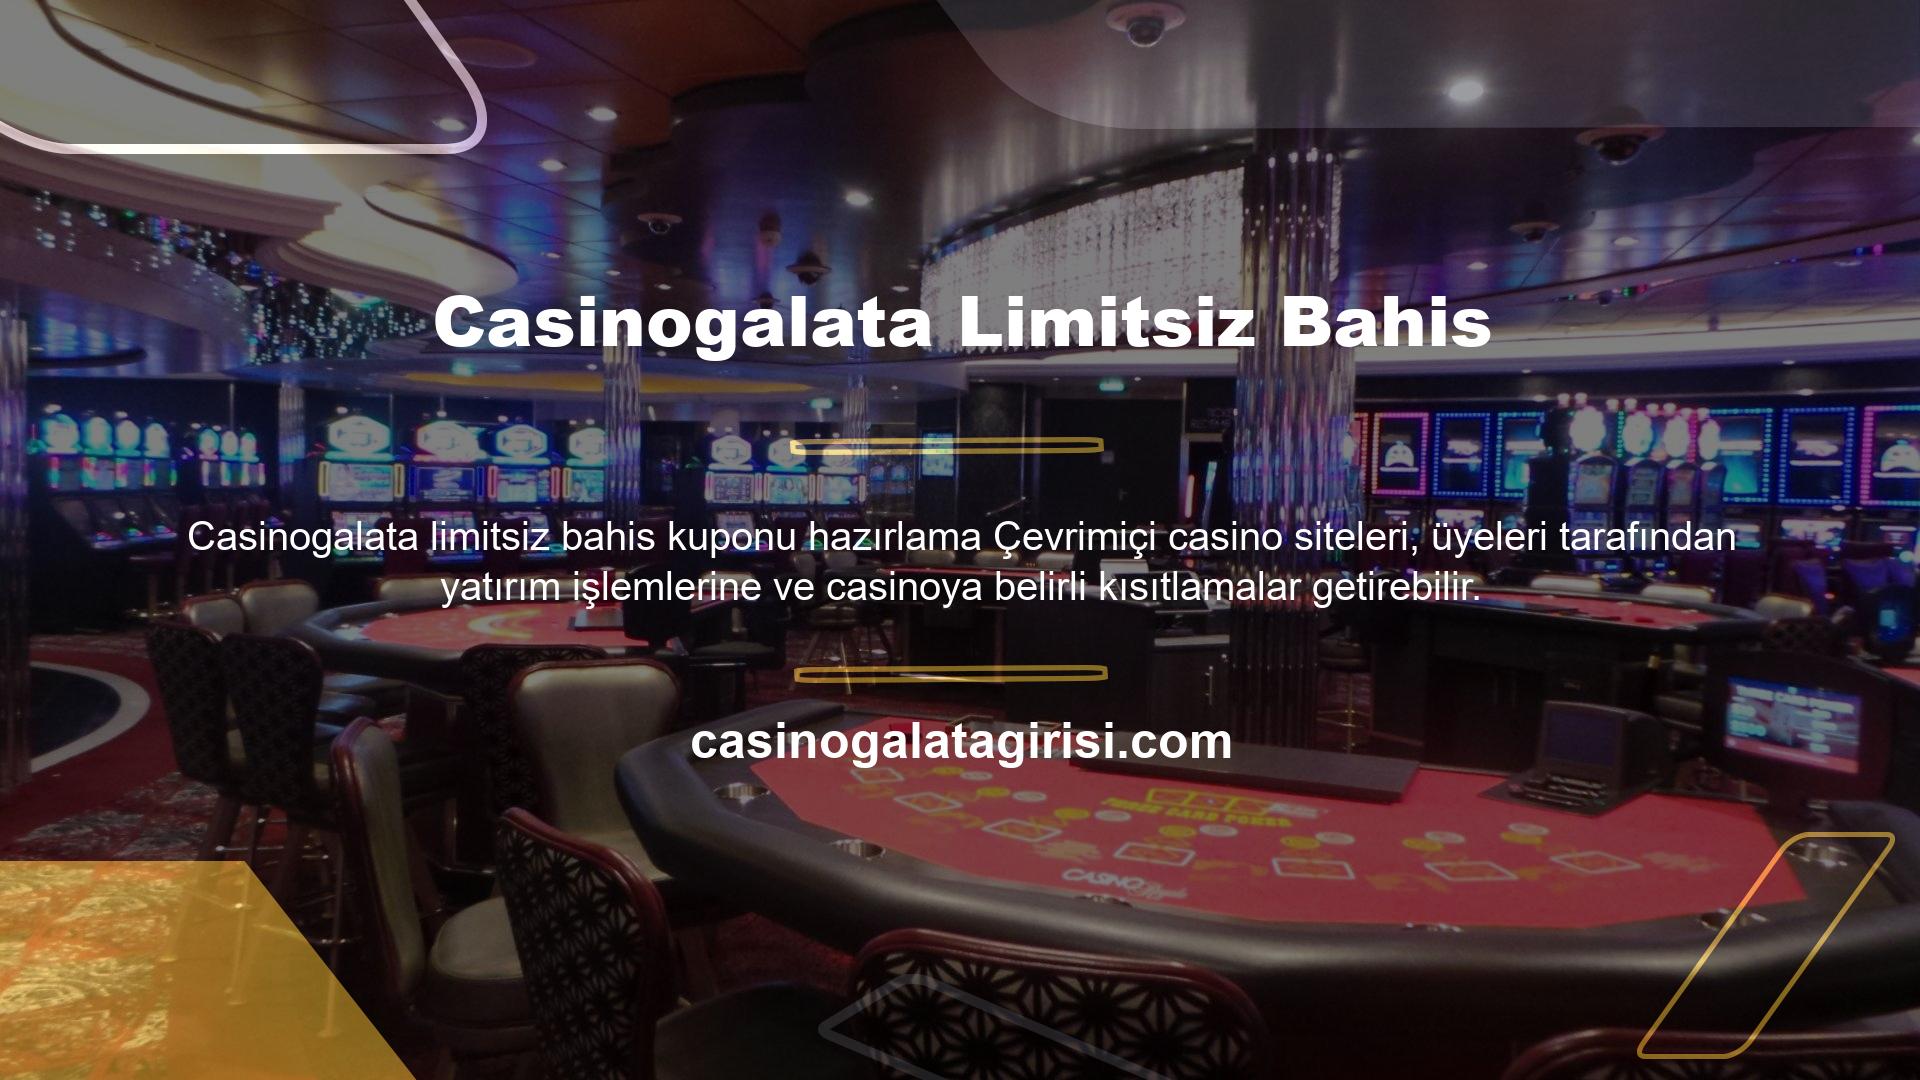 Casinogalata Gaming, Avrupa ve Türkiye pazarındaki hizmetleriyle üyelerine sınırsız kazanç seçeneği sunmaktadır